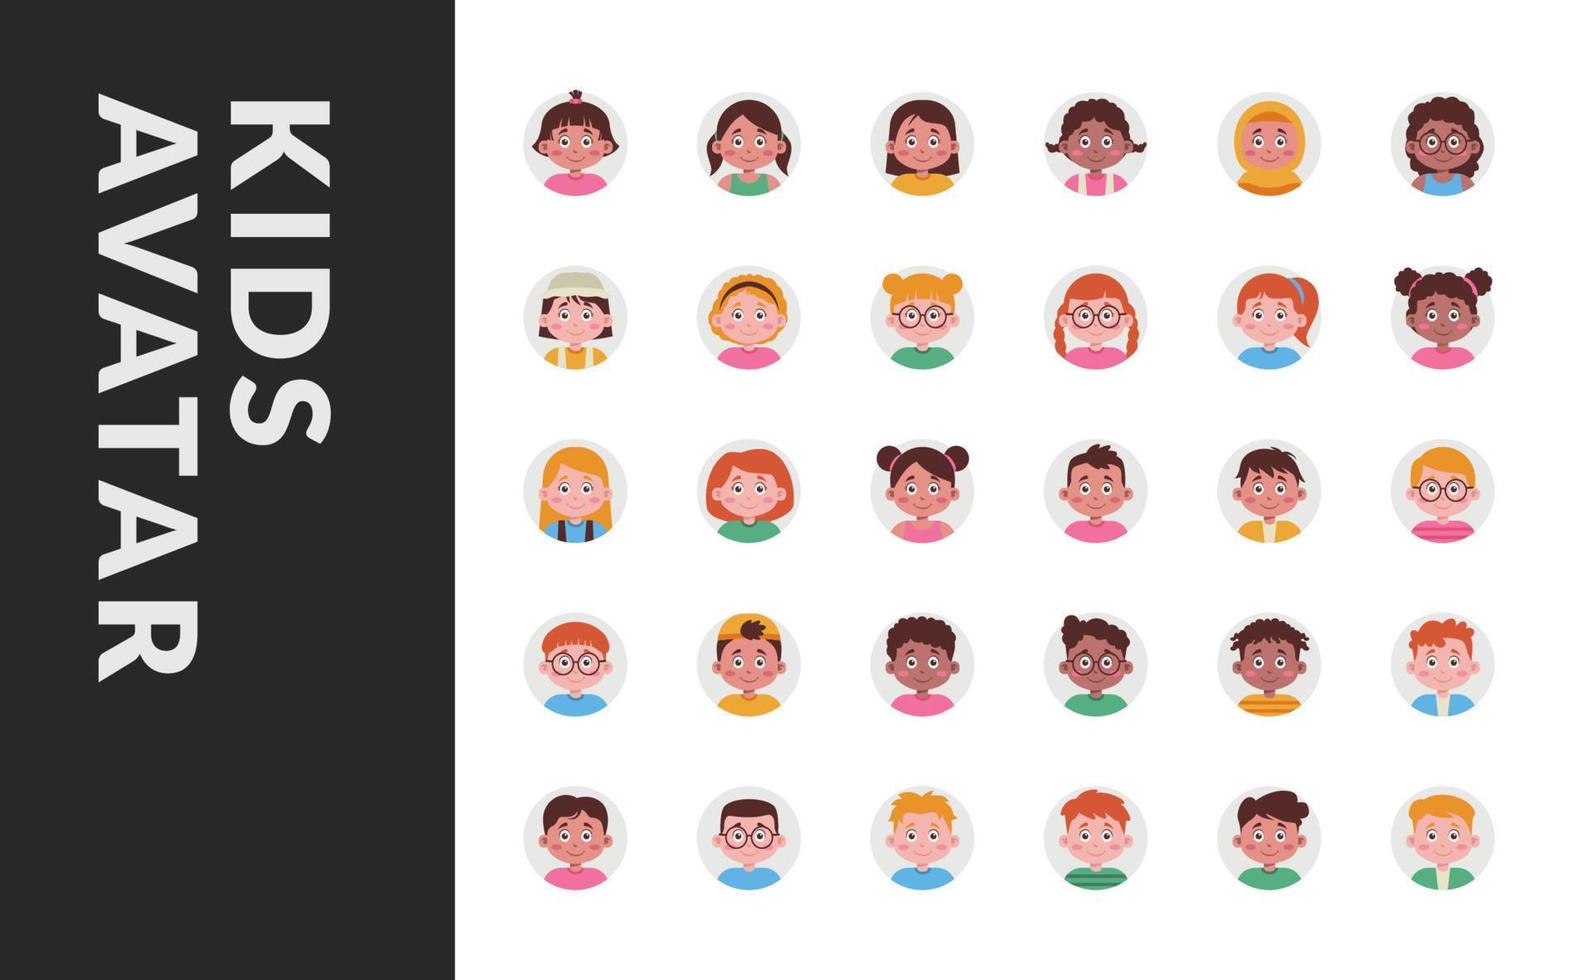 enfant enfants avatar profil utilisateur avec diversité pour l'enfance préscolaire maternelle avec cercle rond vecteur